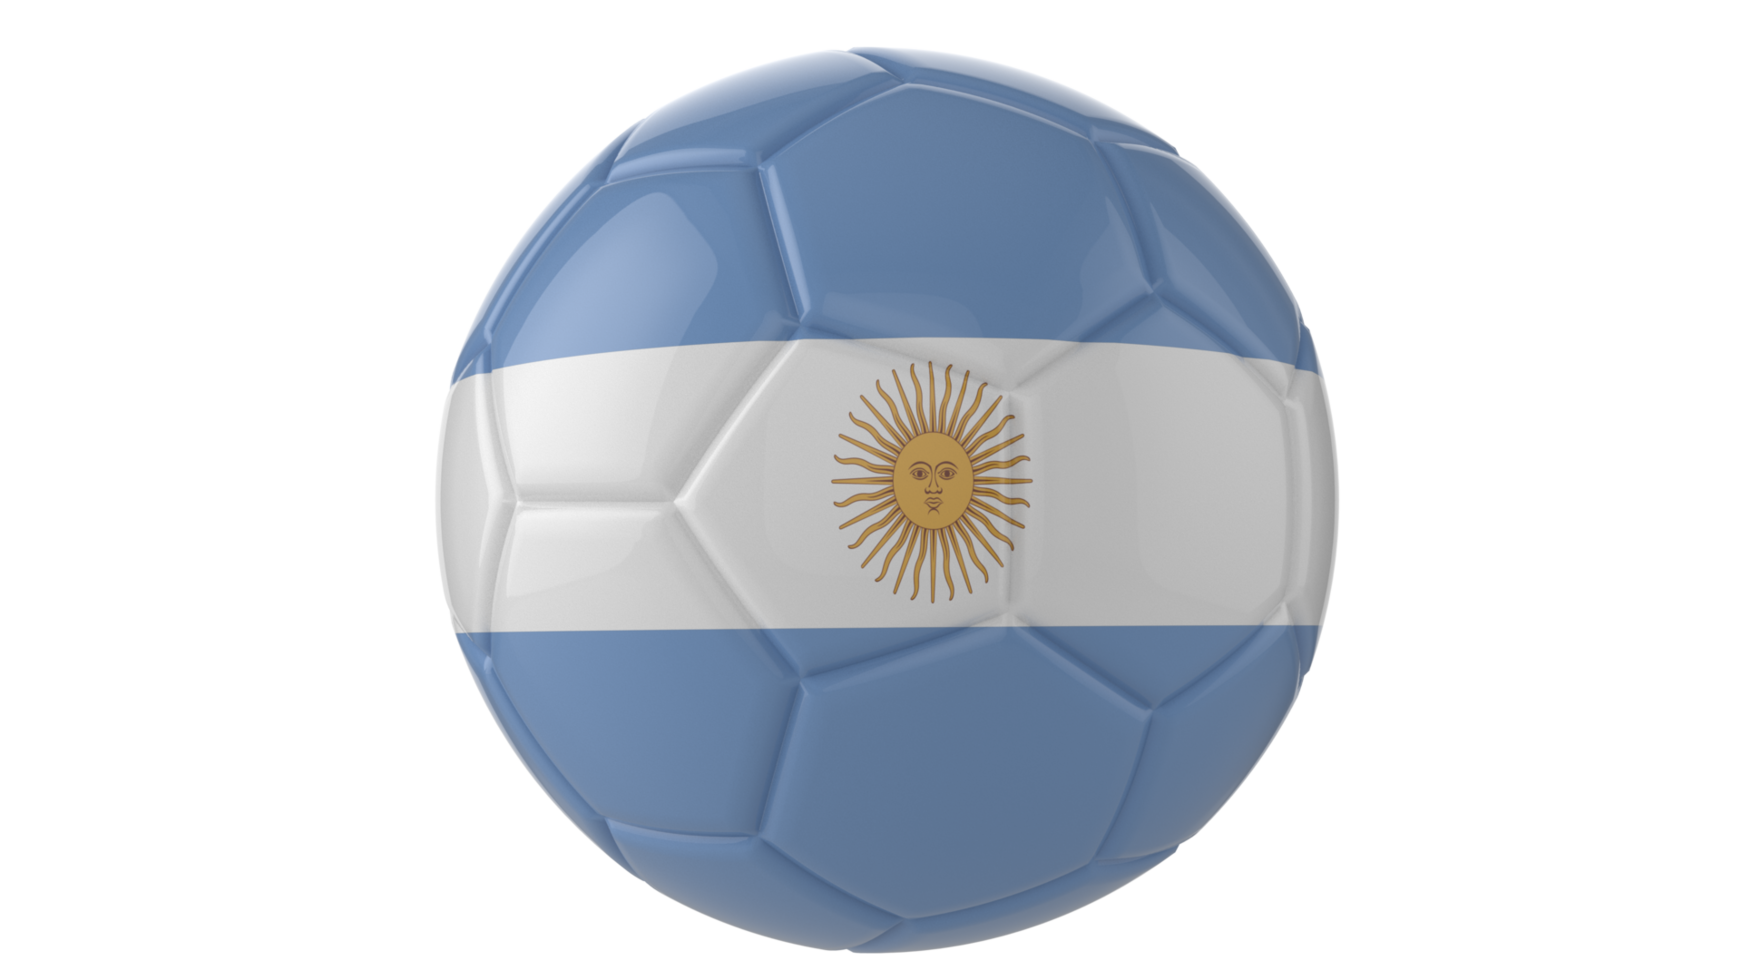 Balón de fútbol realista en 3d con la bandera de uruguay aislado sobre fondo png transparente